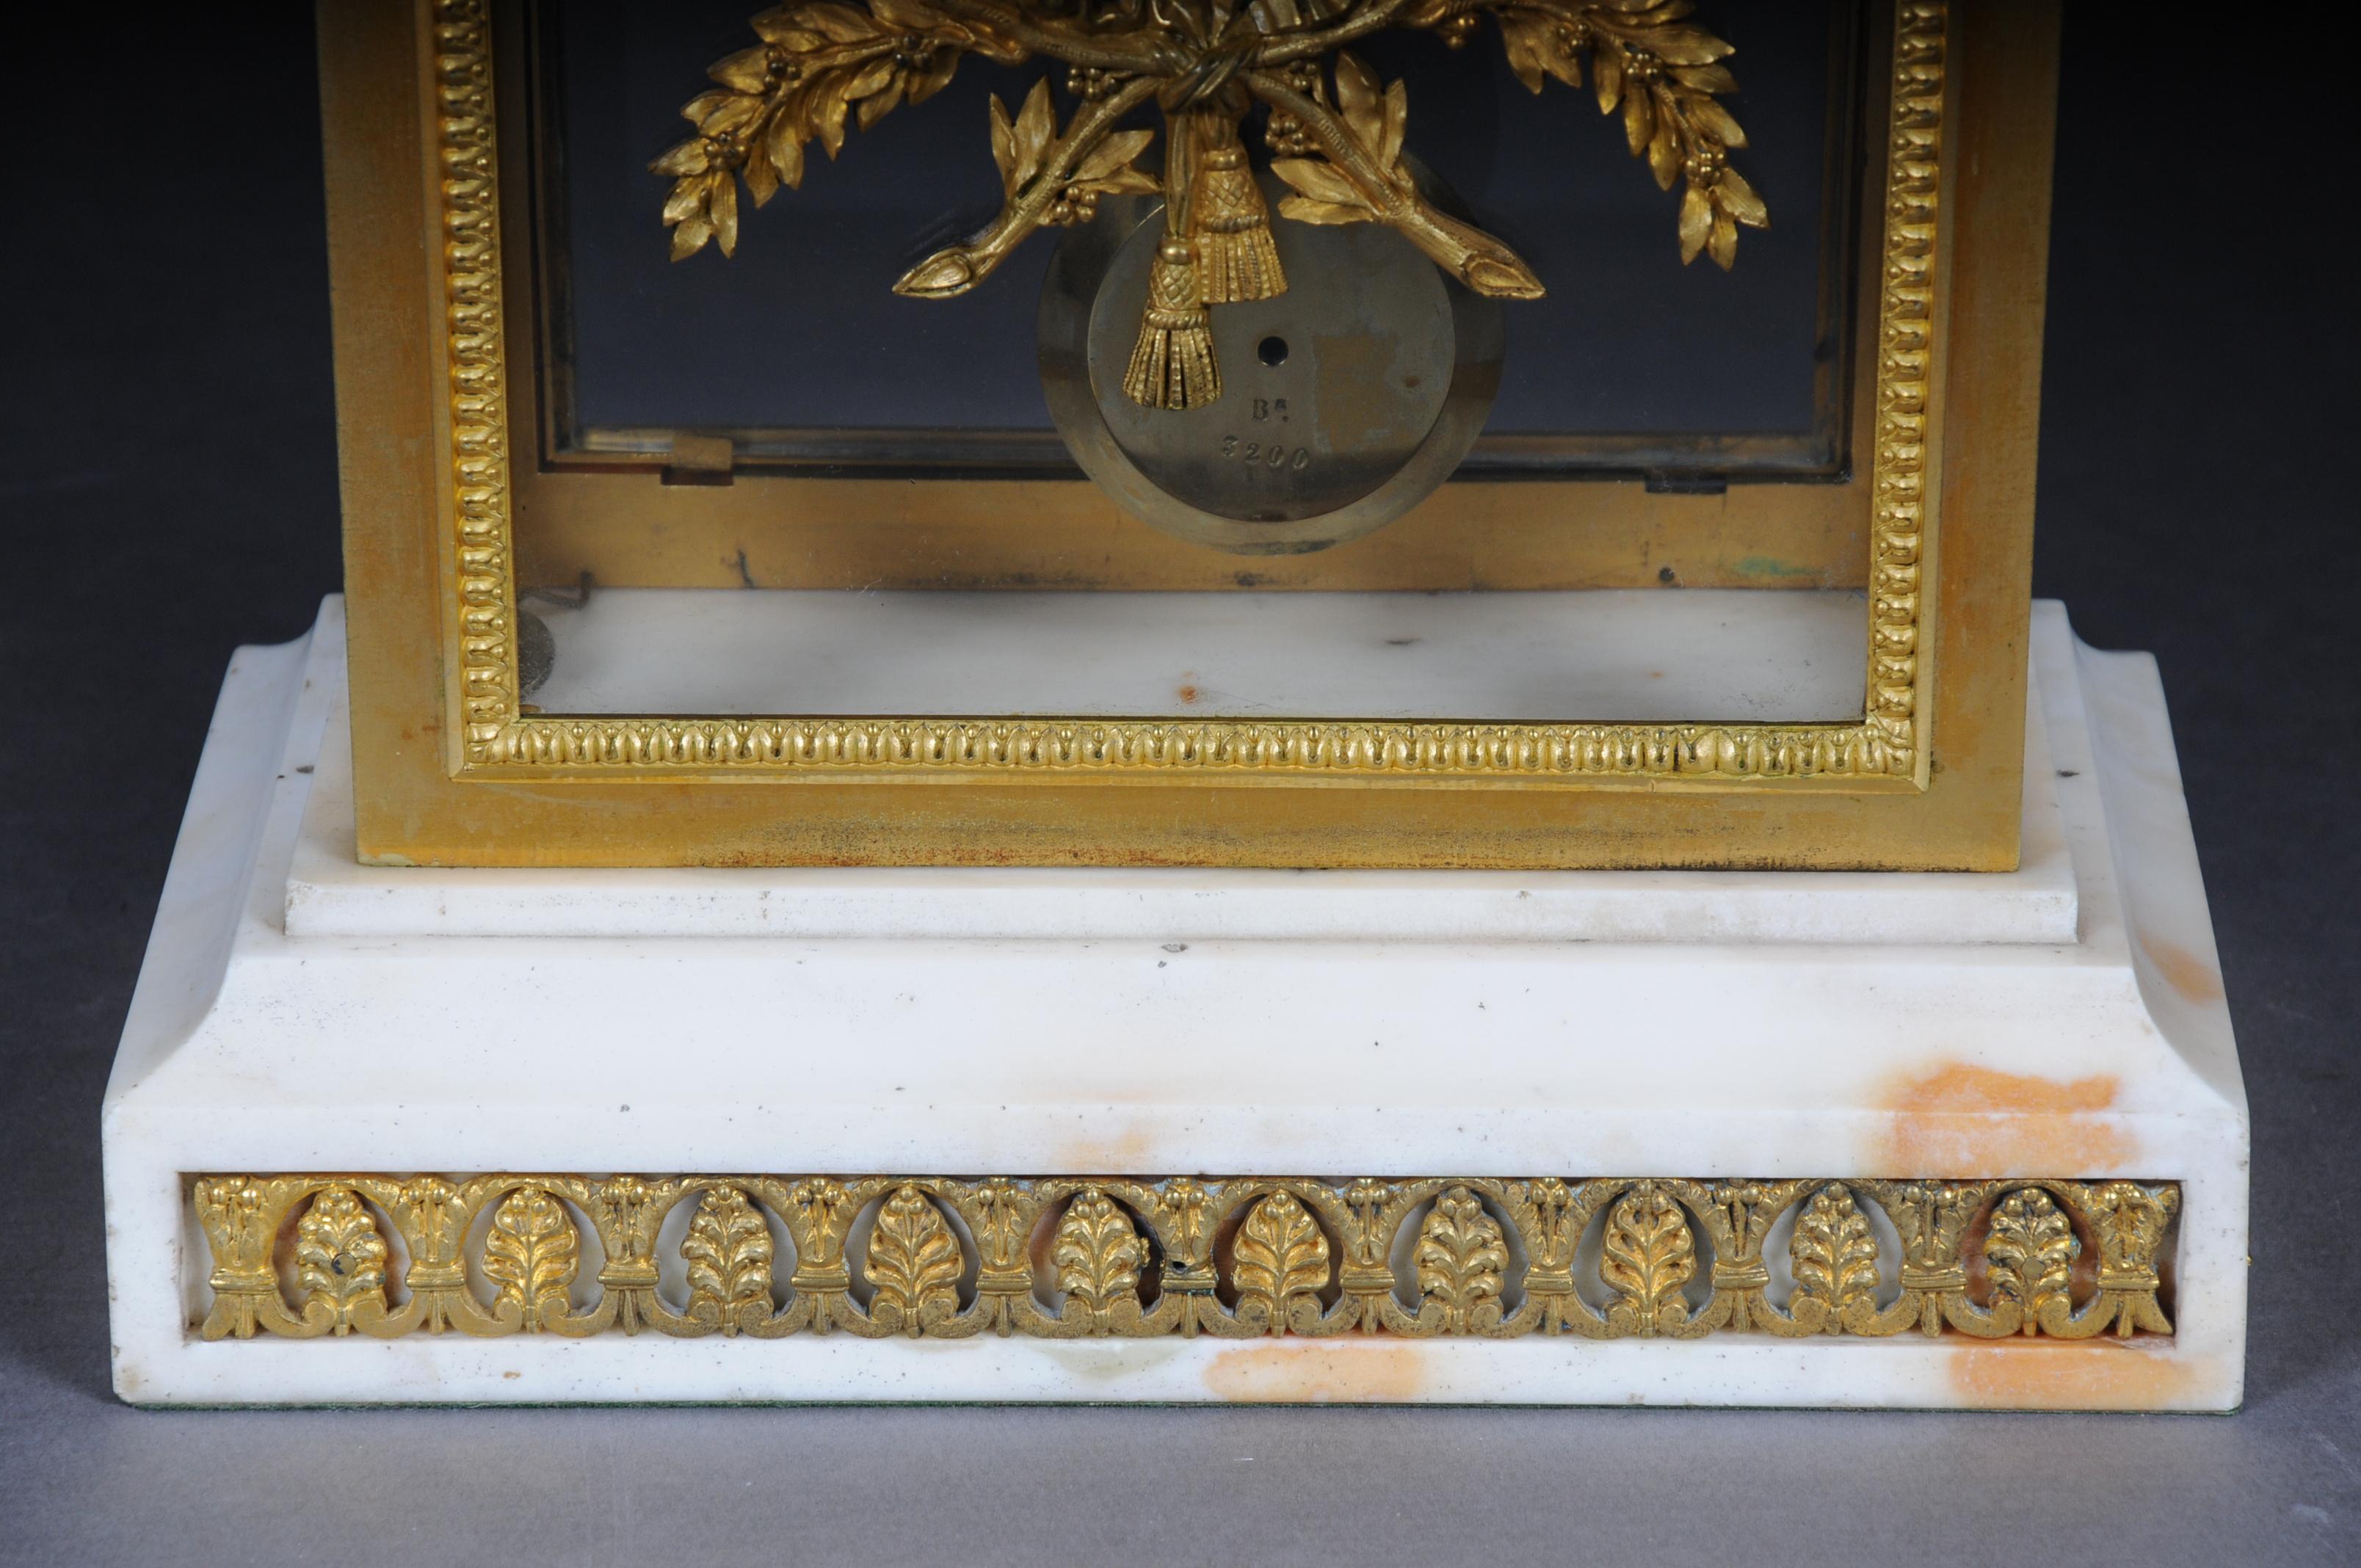 Antiker französischer Kaminsims / Uhr, Deniere a Paris, um 1880

Rundum verglastes, feuervergoldetes Bronzegehäuse mit Reliefdekor, auf Alabastersockel. Eintürig, weißes Emailzifferblatt mit schwarzen, römischen und arabischen Ziffern, ausgesägten